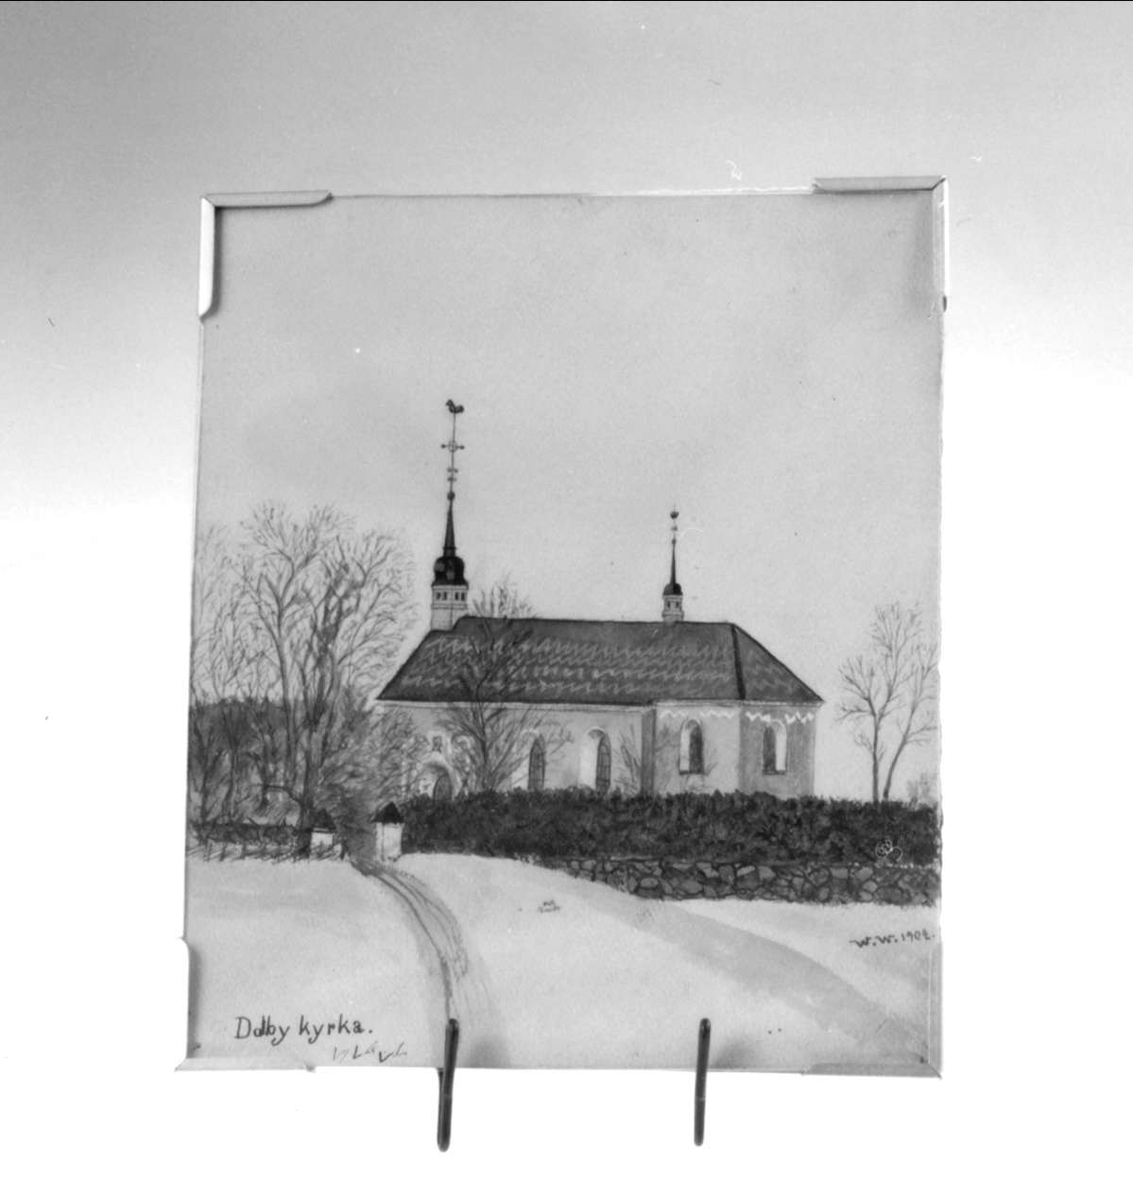 Dalby kyrka, Dalby socken, Uppland.